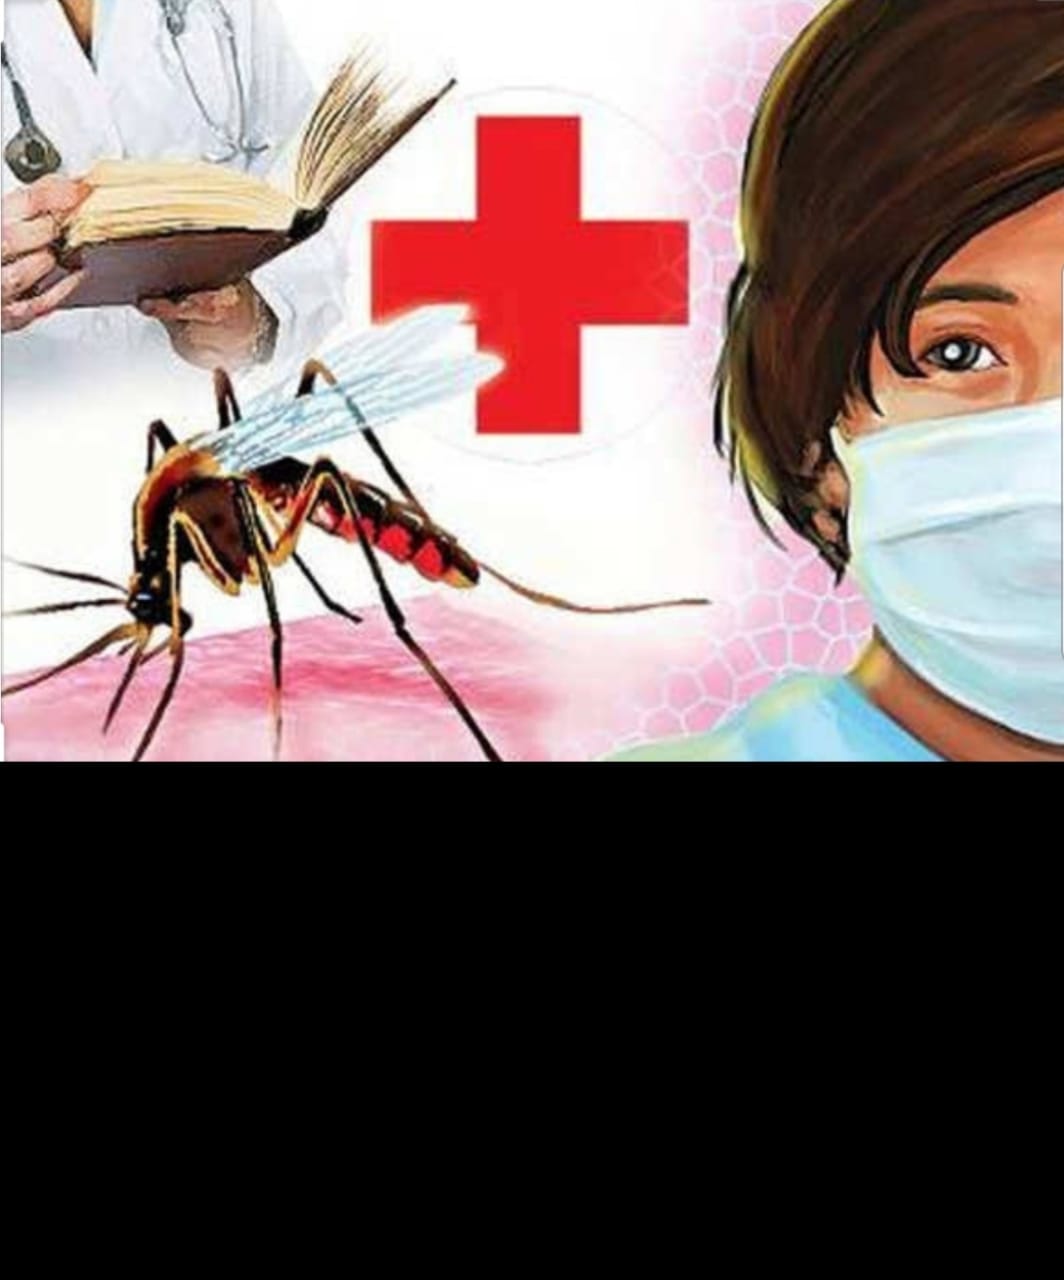 डेंगू हैम्रेजिक हुआ जानलेवा, समय से इलाज जरूरी